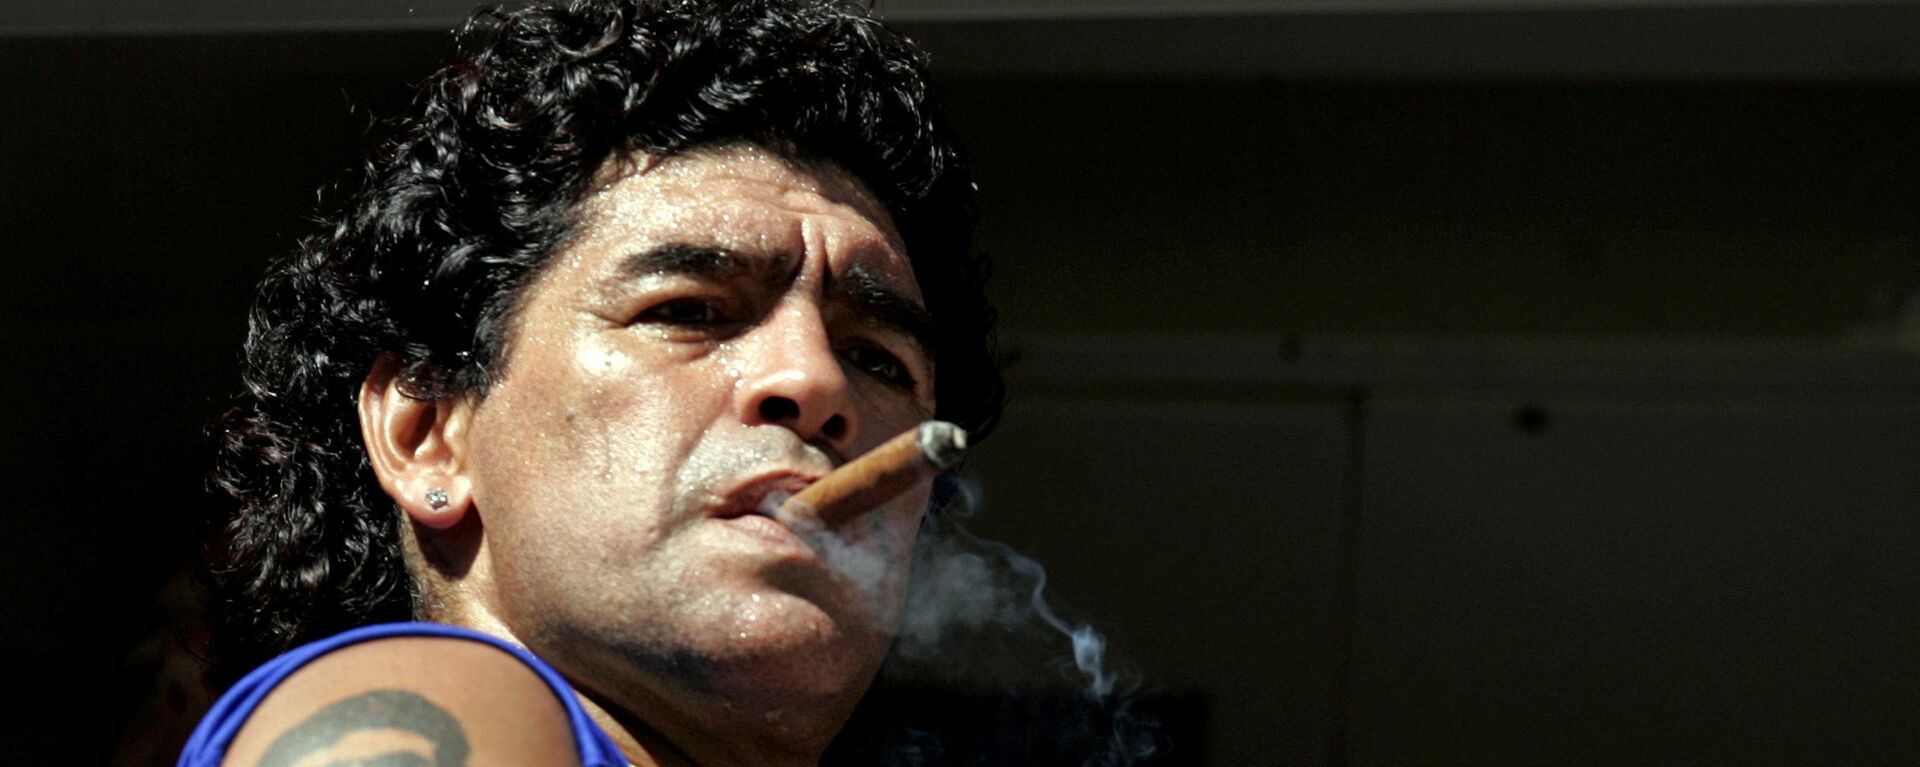 Diego Maradona fumando - Sputnik Mundo, 1920, 27.11.2020